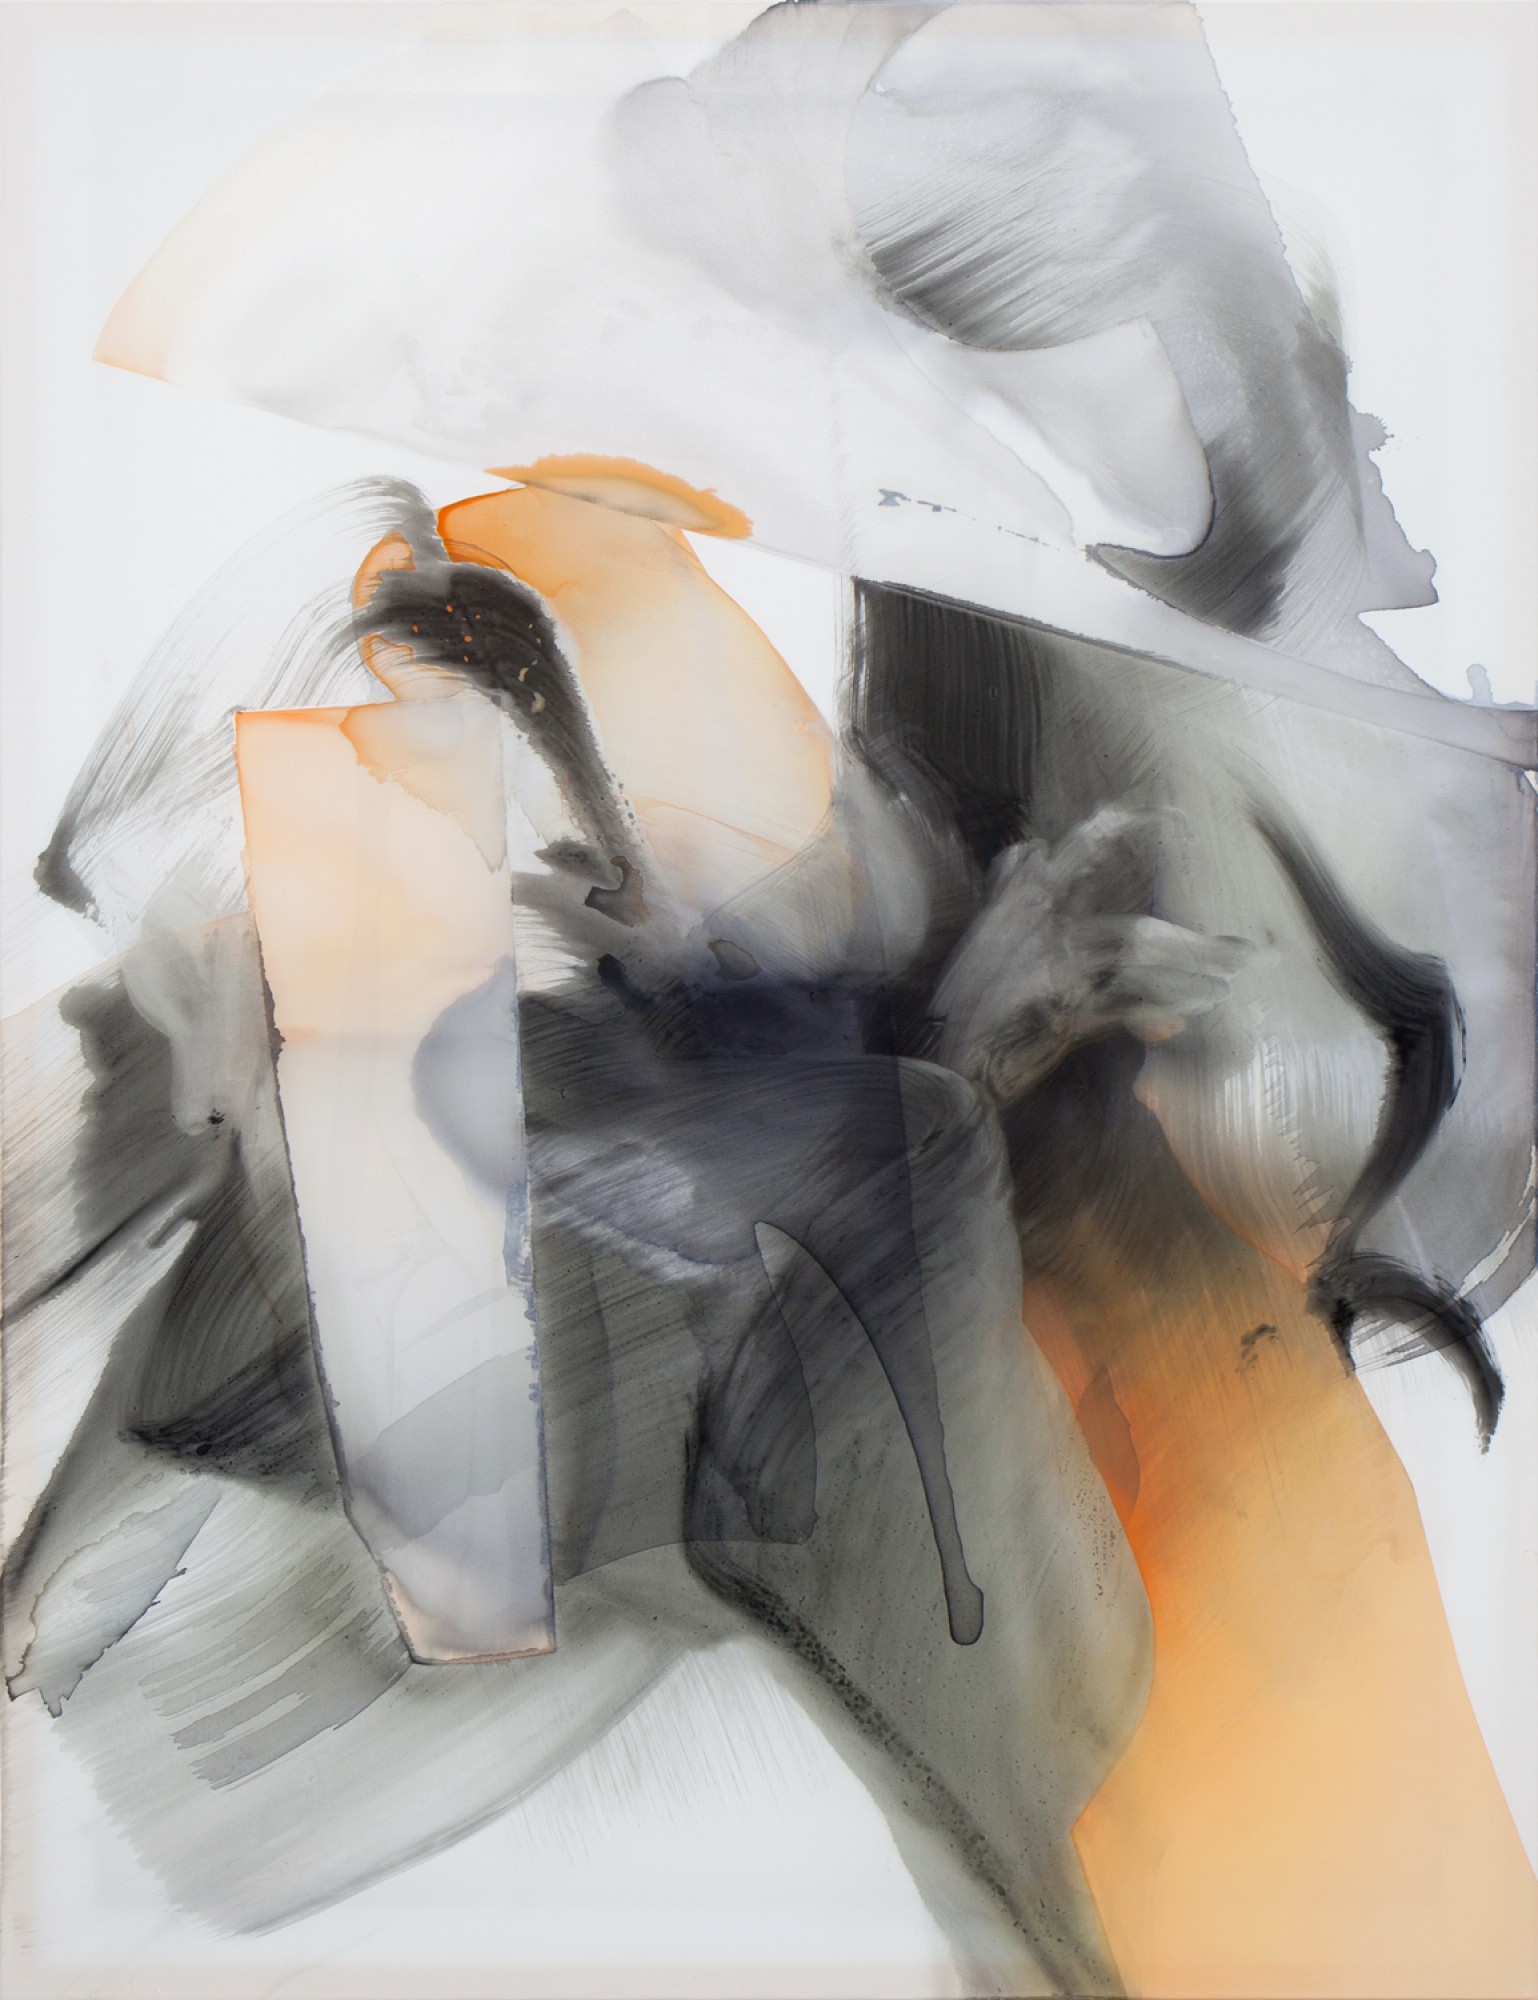 Natascha Schmitten - Poise I, 2020, ink, oil on nylon, 130 x 100 cm